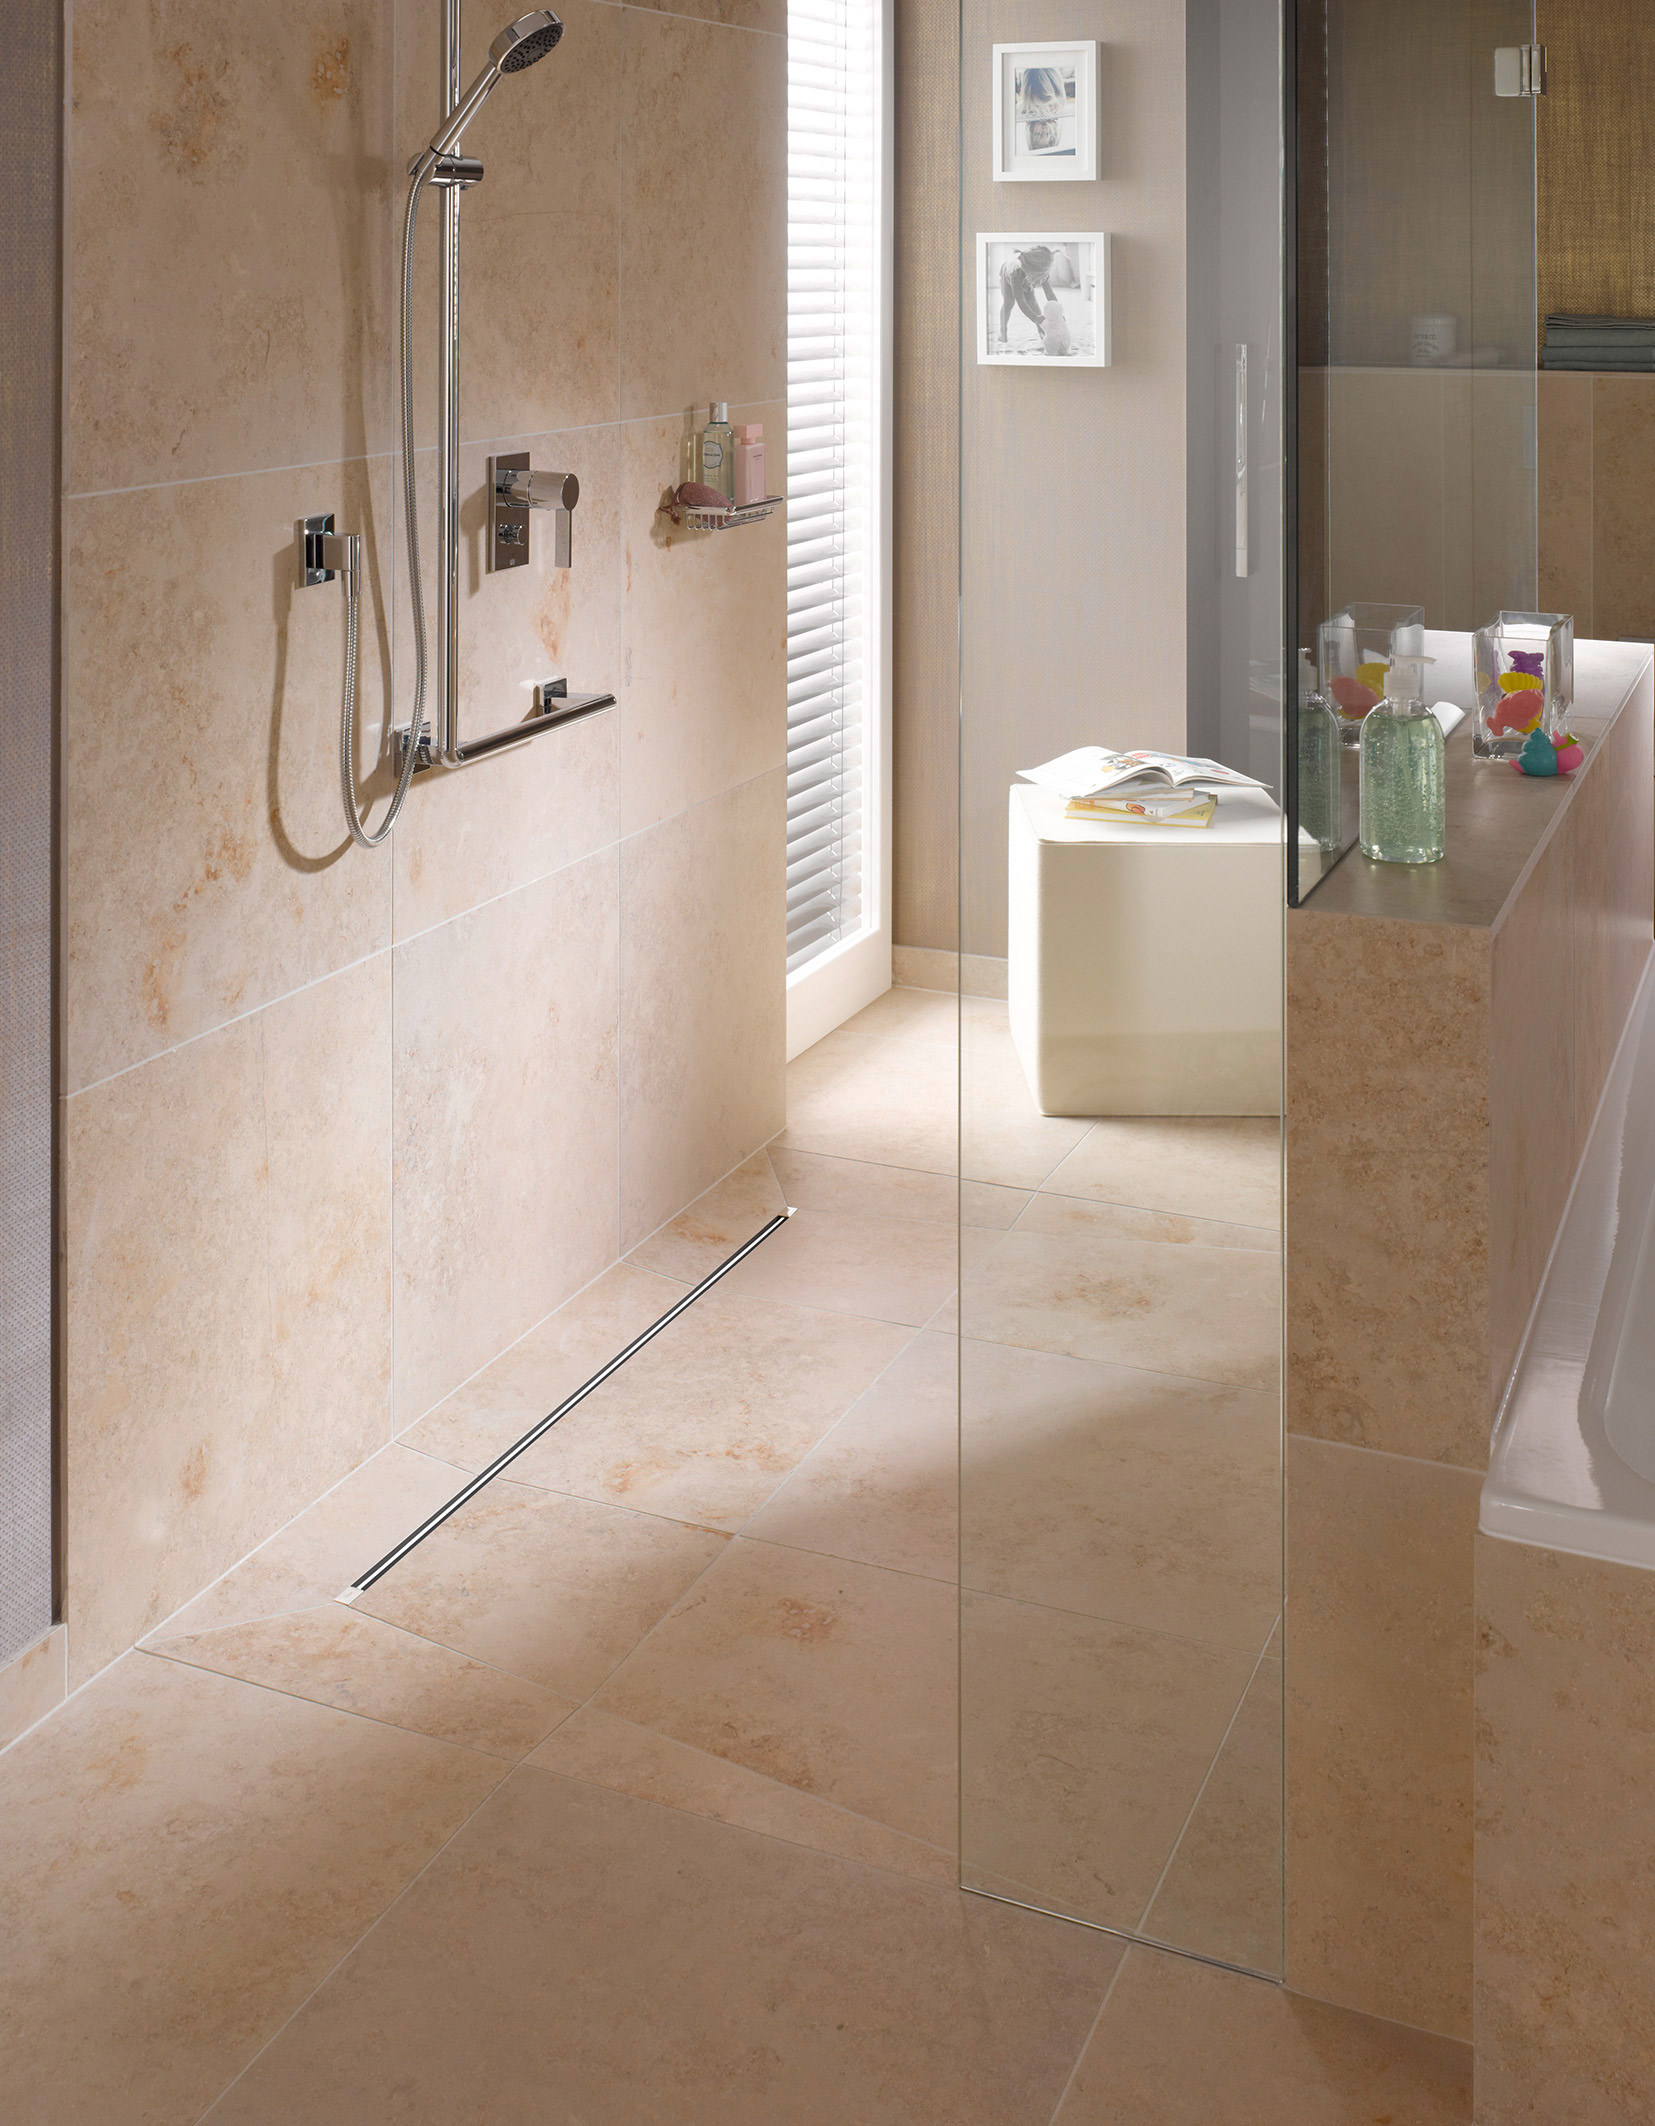 Sprchové žlábky jako standard běžné koupelny. Sprchový žlábek Advantix Vario od společnosti Viega je velmi úzký a decentně se začlení do celkového řešení koupelny. (Foto: Viega)